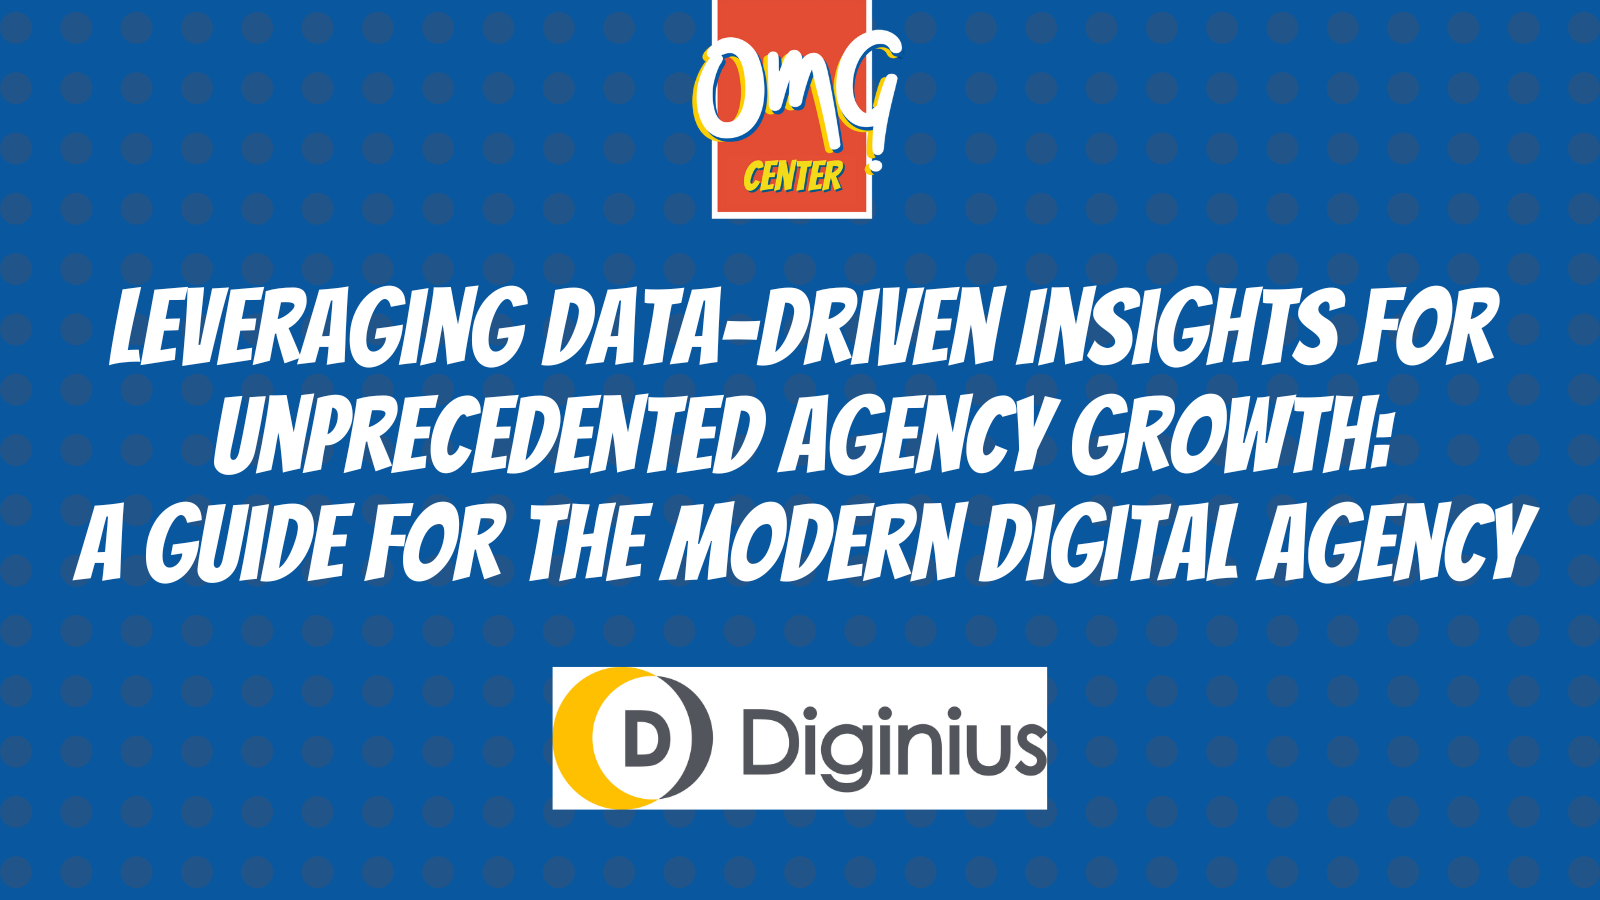 Diginius - Leveraging Data-Driven Insights